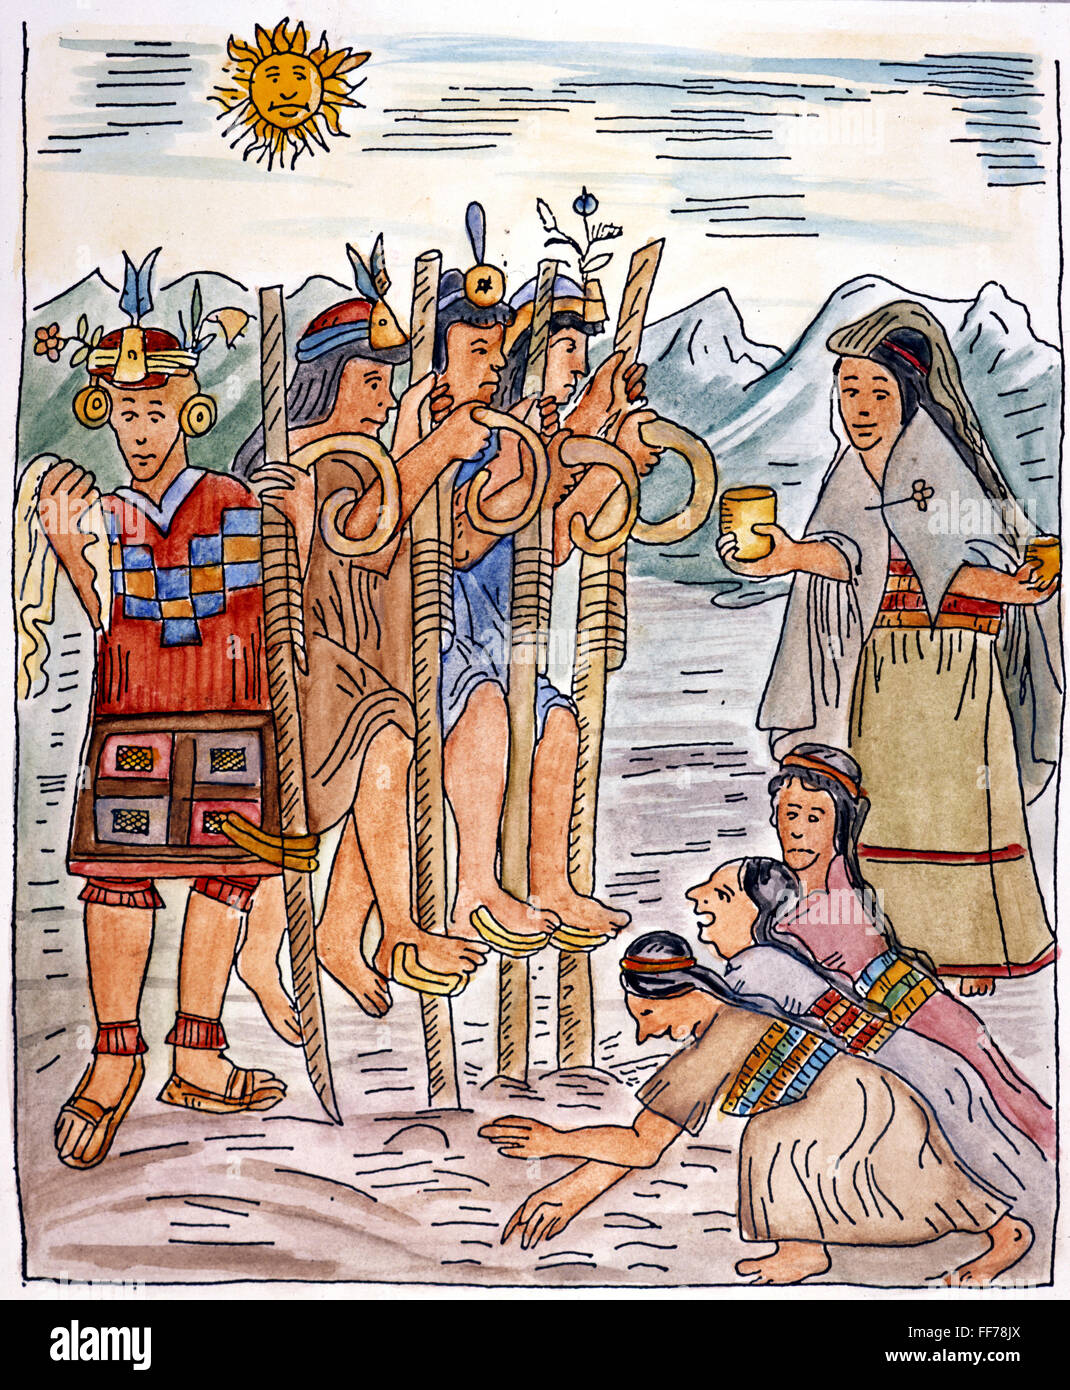 La agricultura Inca. /NIncas utilizando footplows sembrar un maizal. Dibujo de "El Primer Nueva Crónica y buen gobierno' ('El primer Nueva coronica y buen gobierno"), 1583-1615, por Felipe Guaman Poma de Ayala. Foto de stock